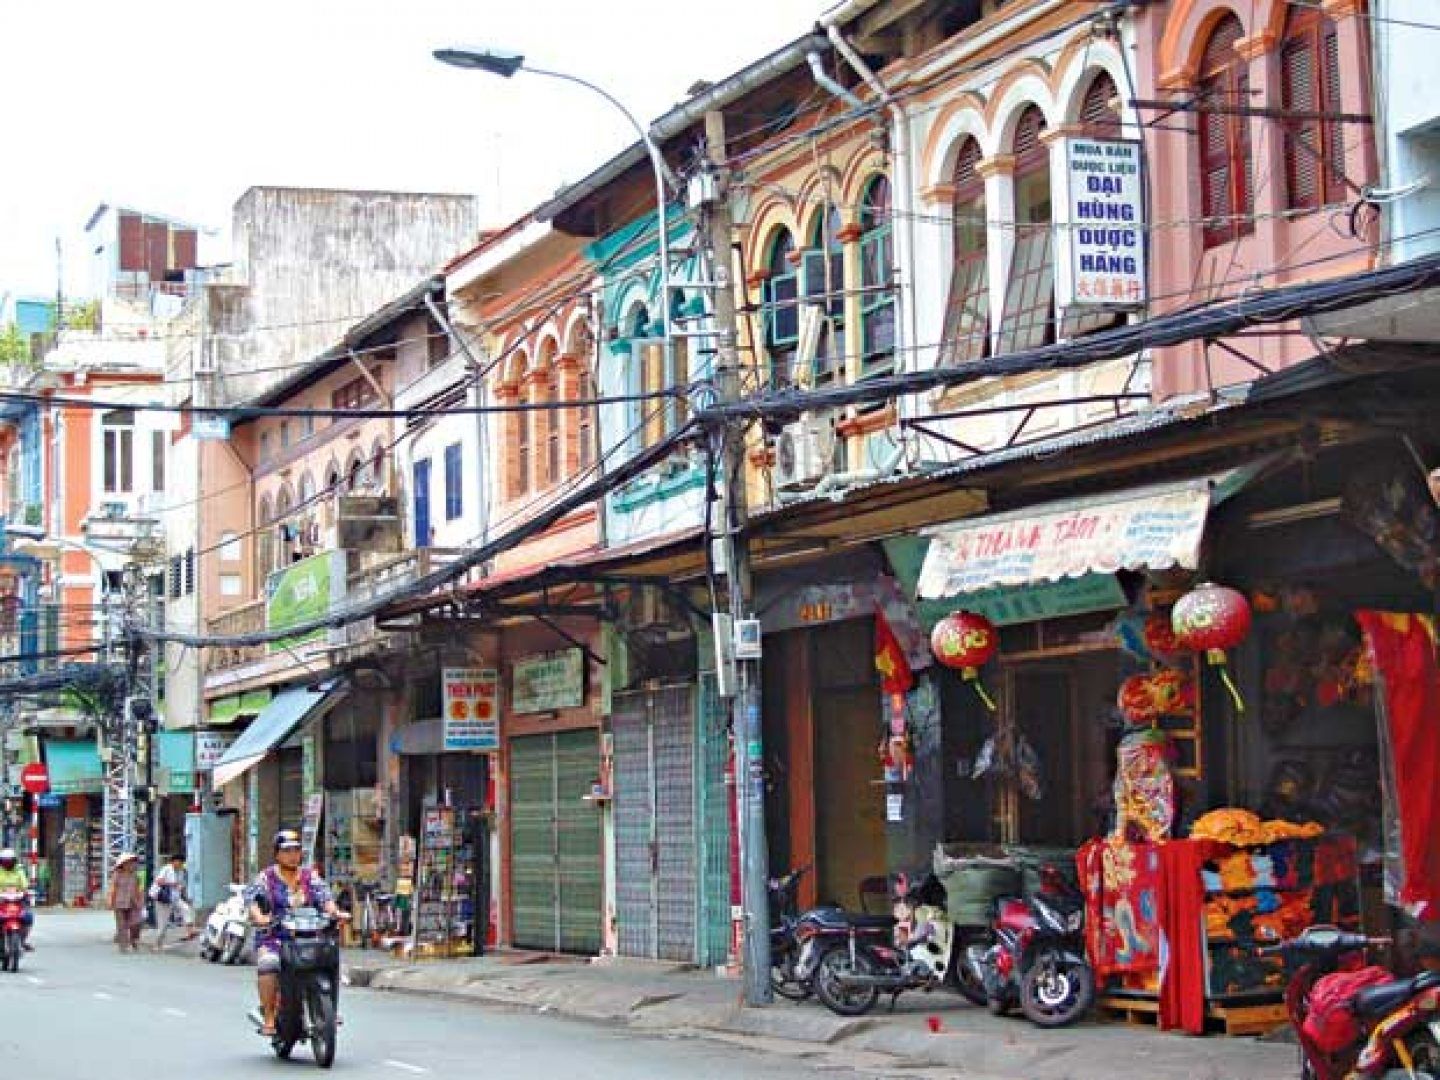 TP.HCM: Quanh việc cải tạo khu phố cổ của người Hoa ở Chợ Lớn - Hội Kiến  Trúc Sư Việt Nam